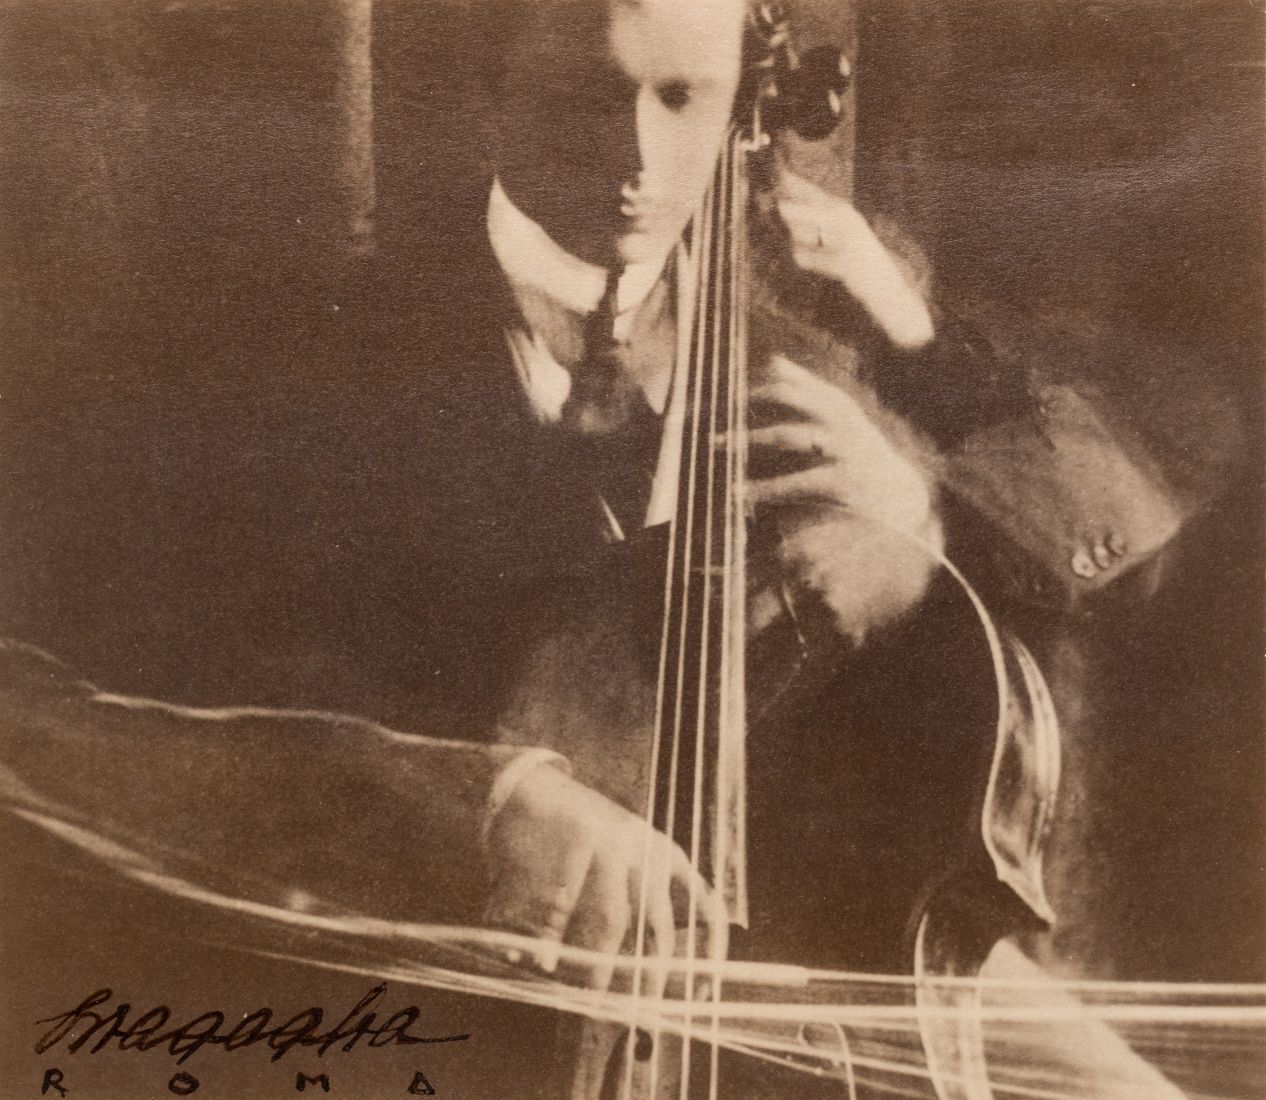 ANTON GIULIO BRAGAGLIA (1890–1960) ANTON GIULIO BRAGAGLIA (1890-1960) | "El viol&hellip;